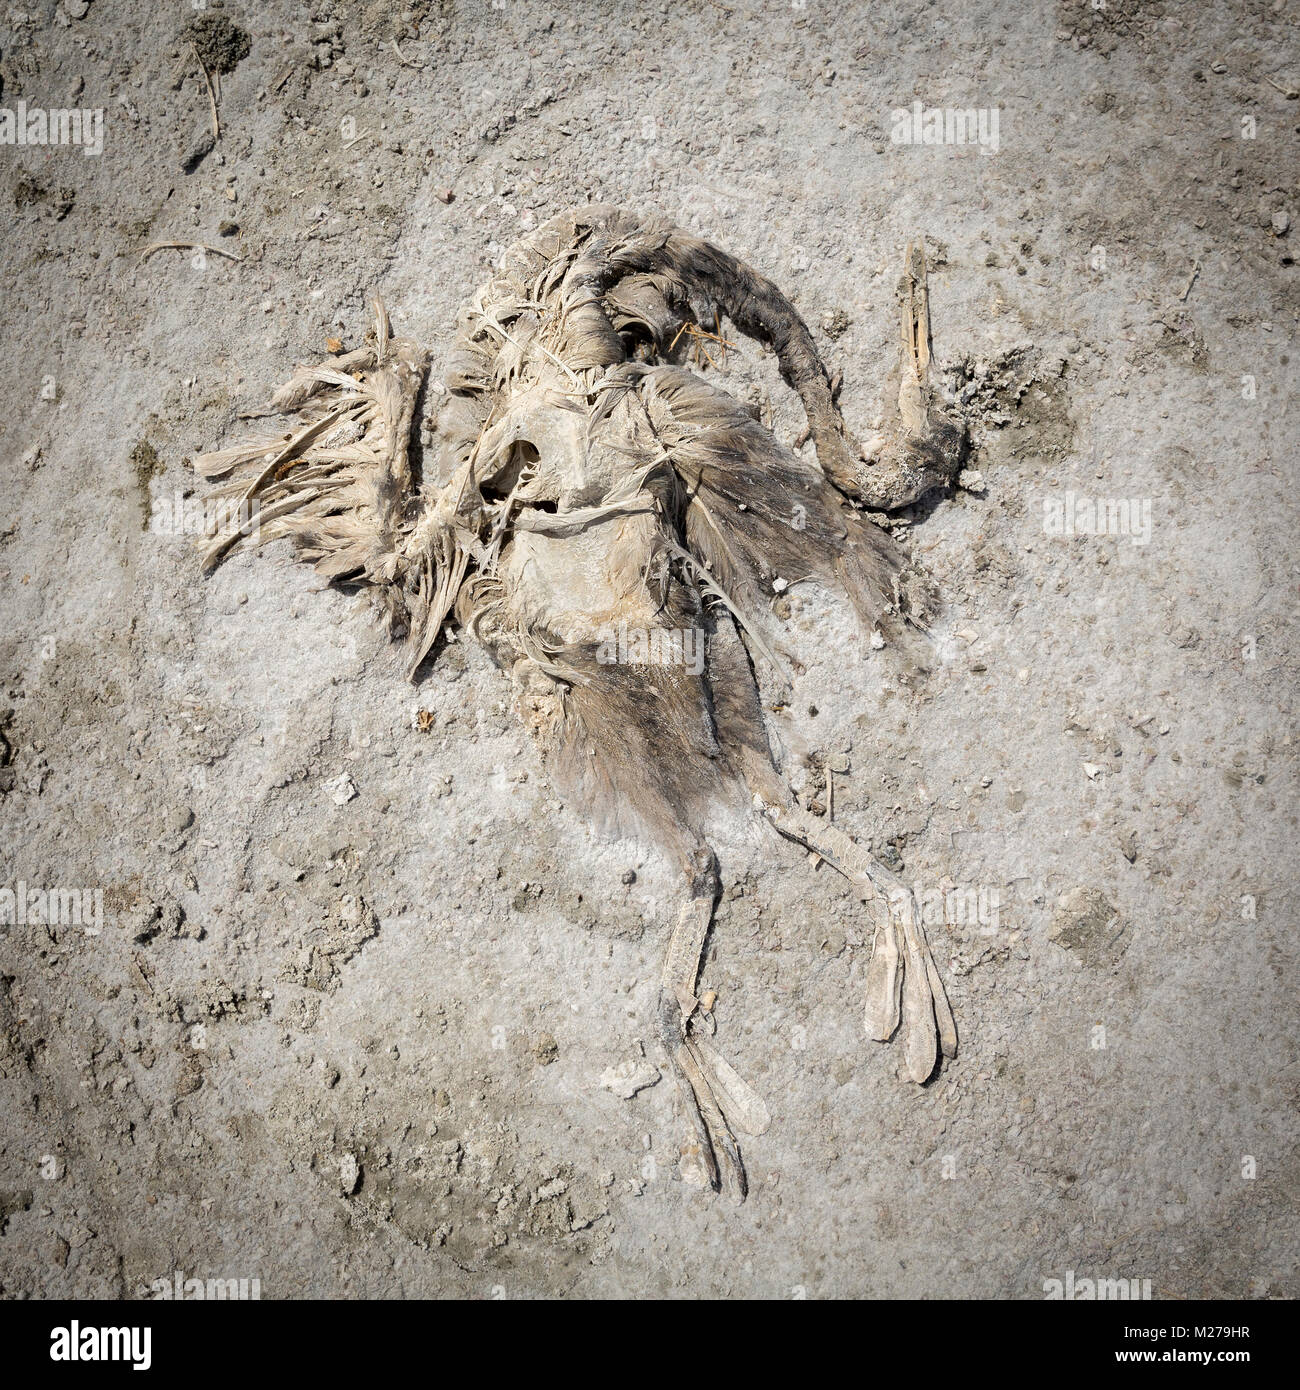 Dead Bird at the Salton Sea, California Stock Photo